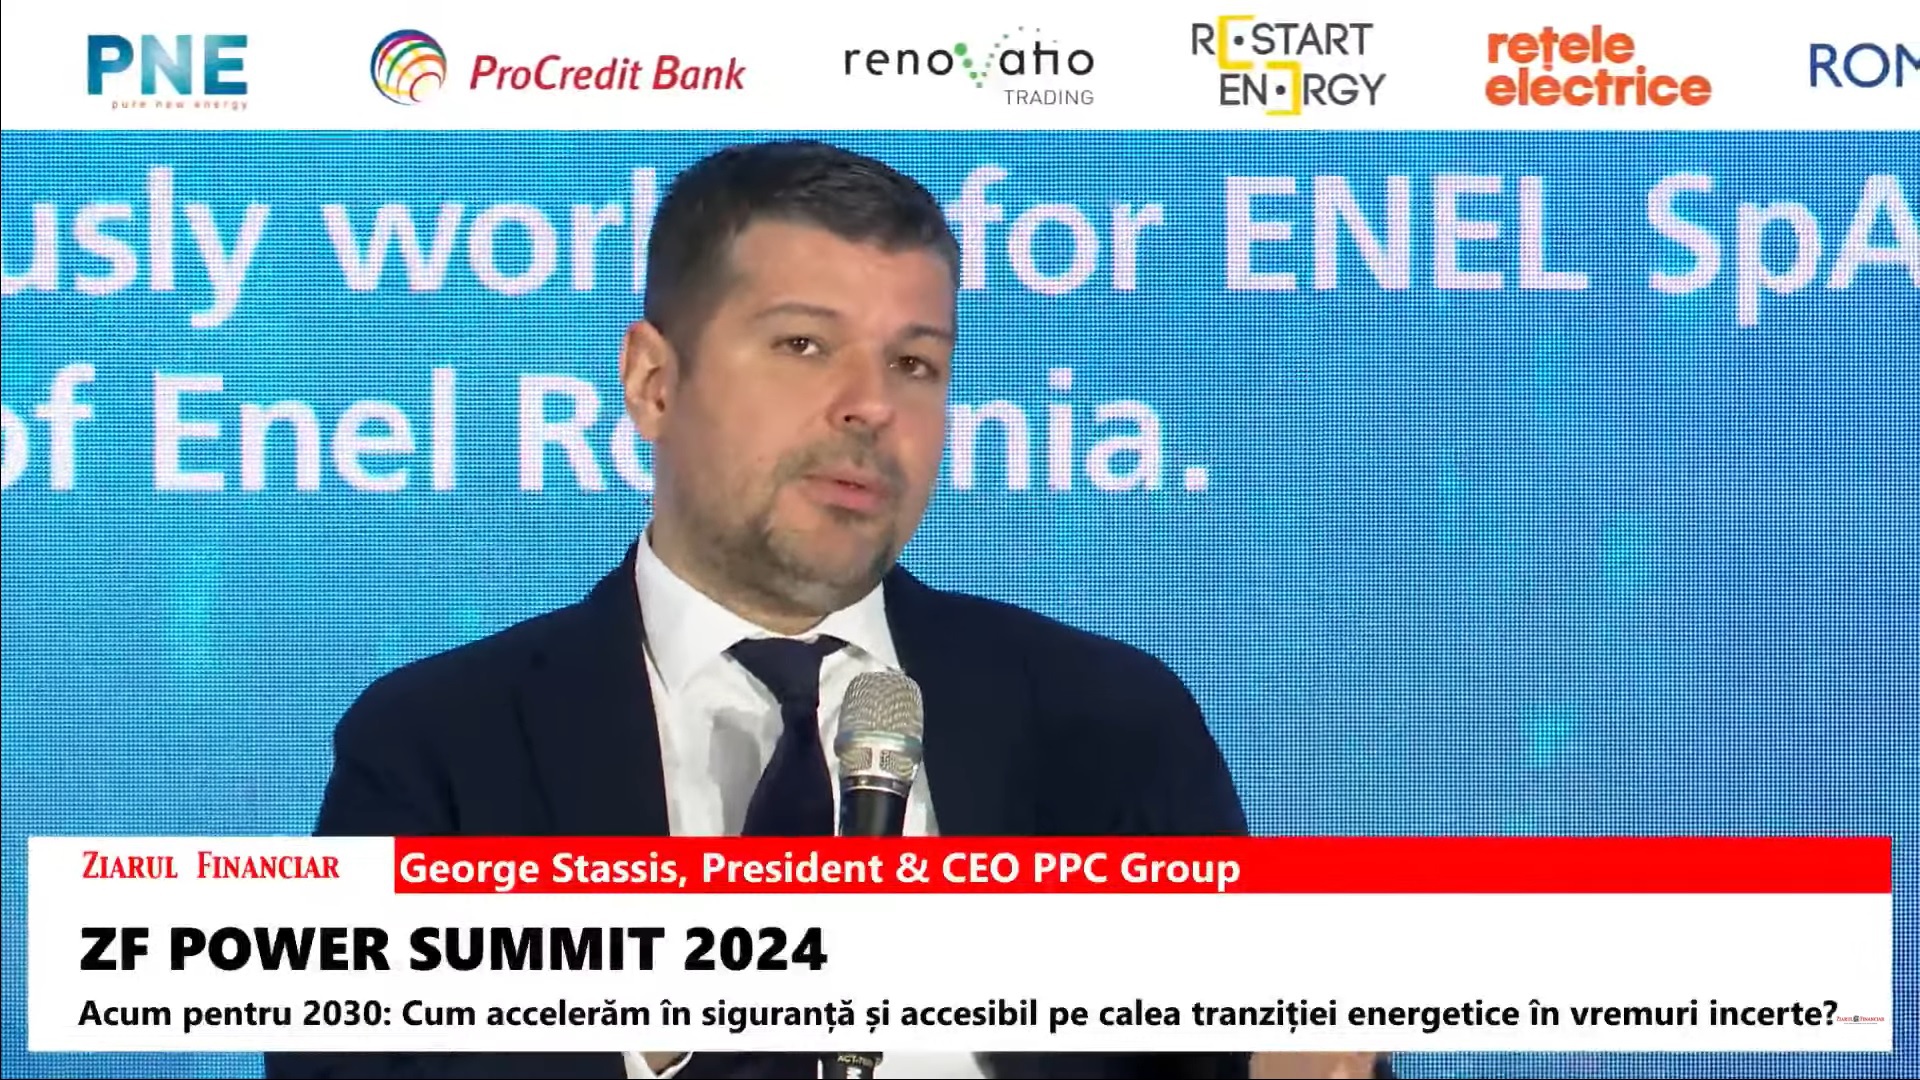 George Stassis, PPC Group: Vom investi circa 2,5 miliarde de euro în România până în 2026, în energie regenerabilă şi în distribuţie. Vrem să construim 1,5 GW noi de regenerabile în următorii trei ani